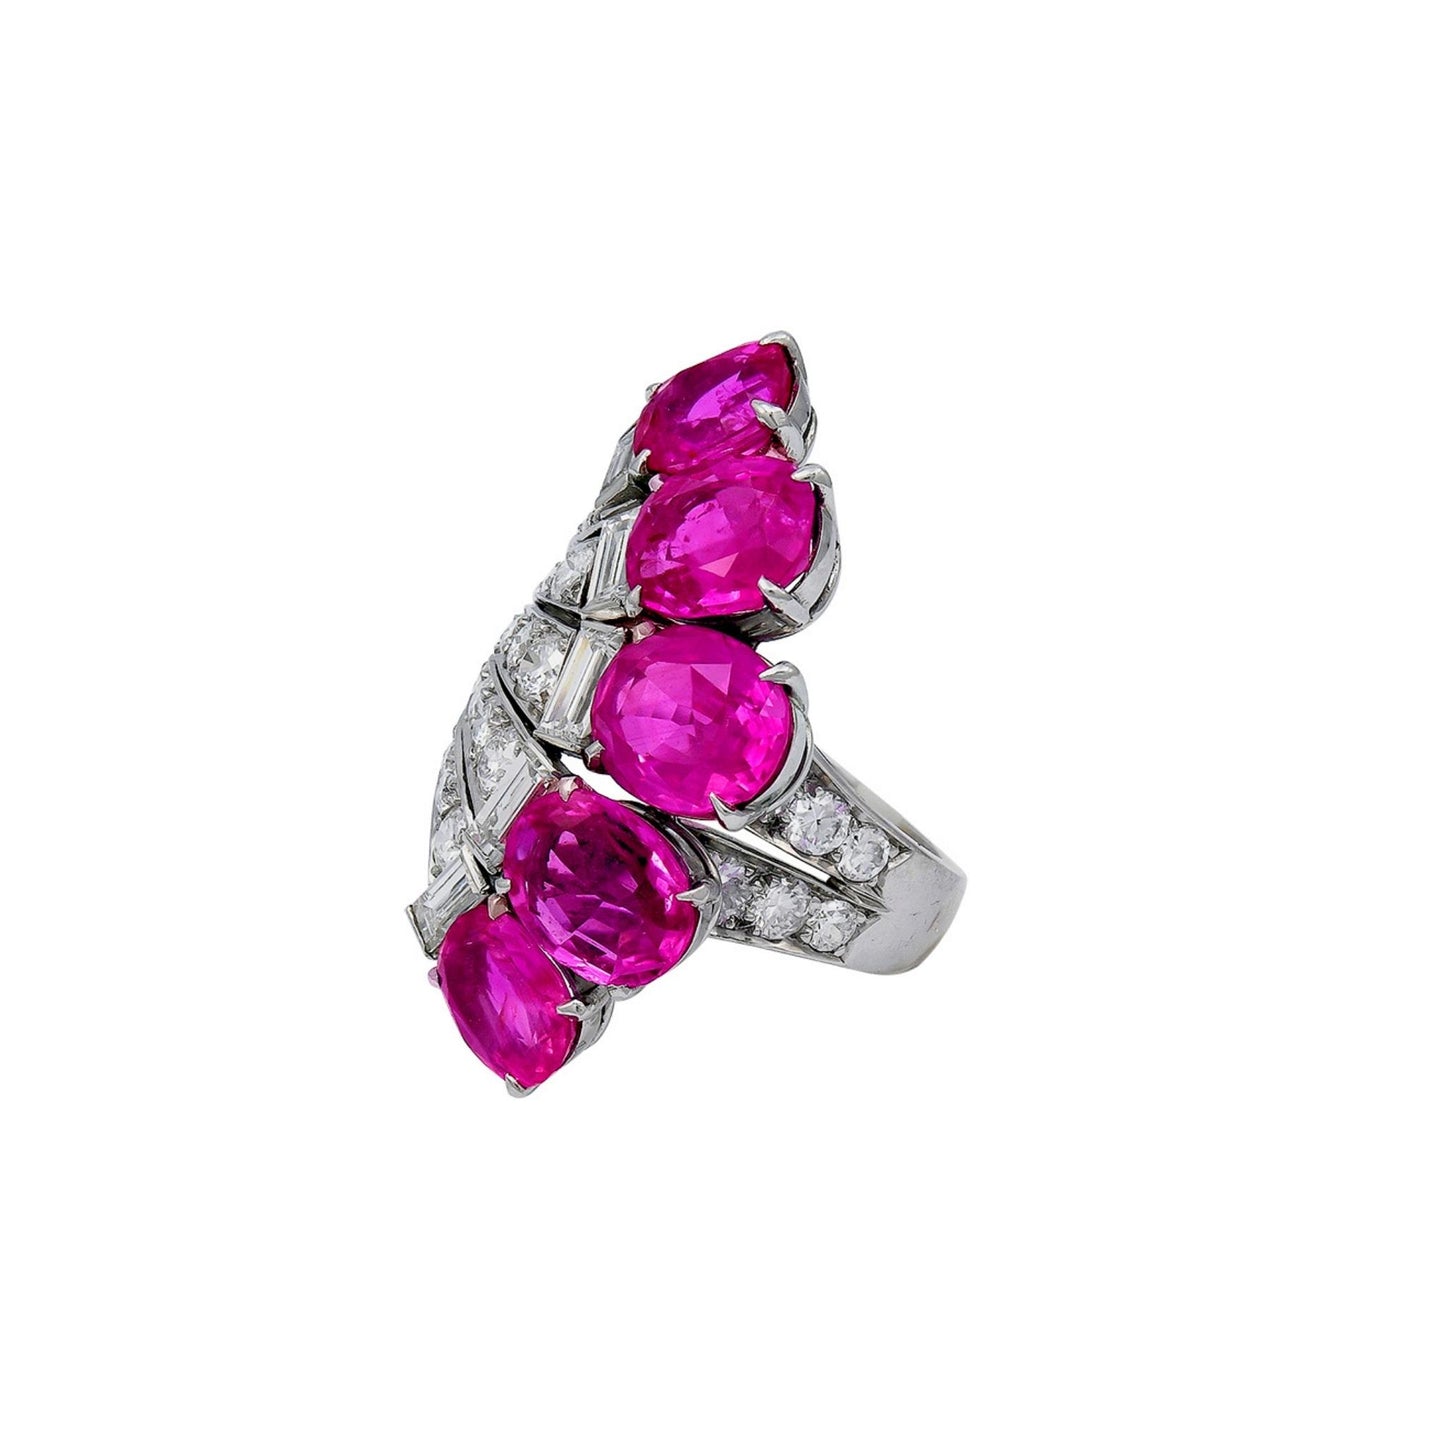 Paul Flato Jewelry Pink Sapphire Fan Ring – Pamela Lipkin Collection